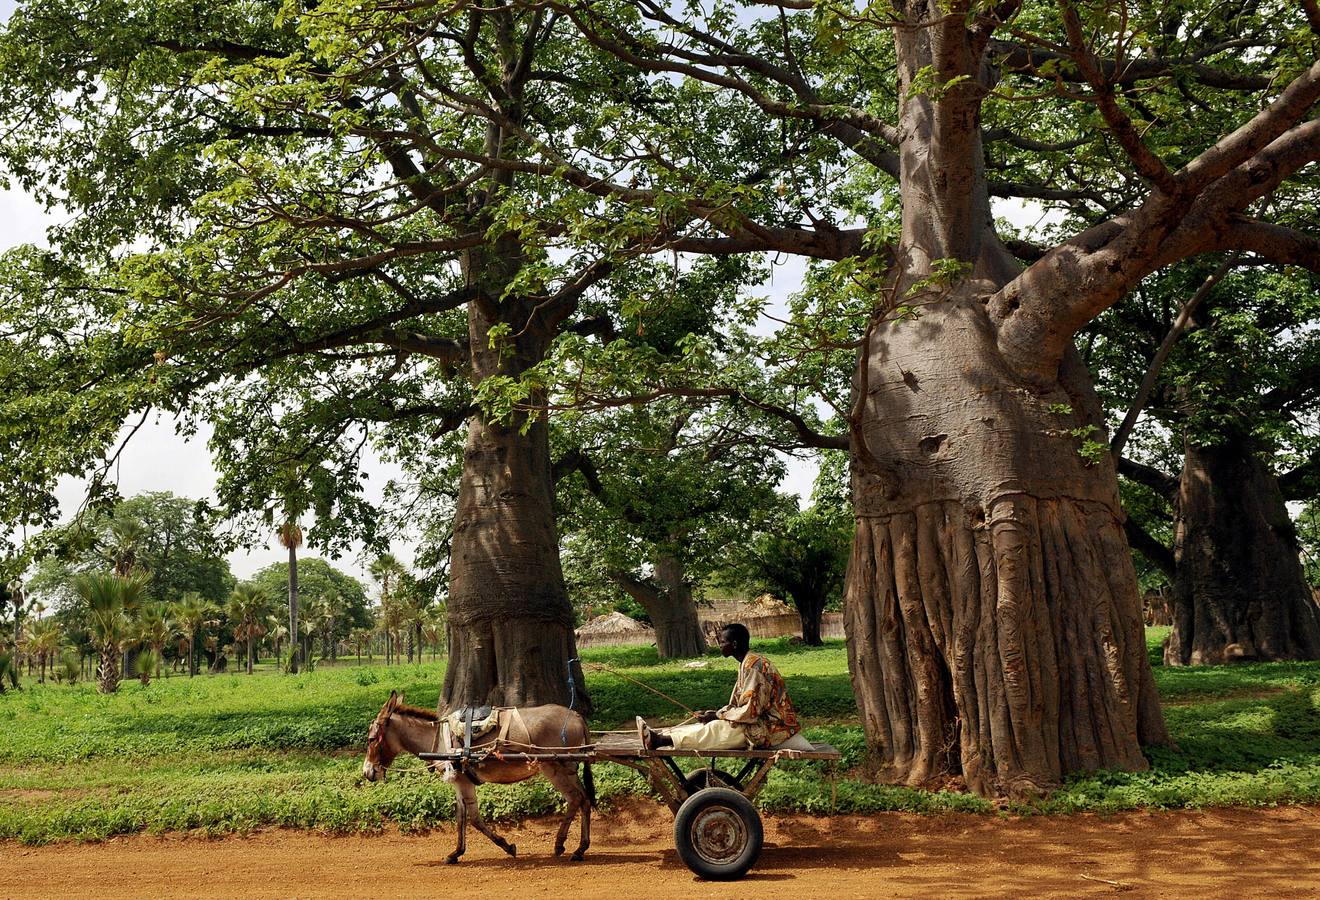 Los campesinos viven muy cerca de los baobabs